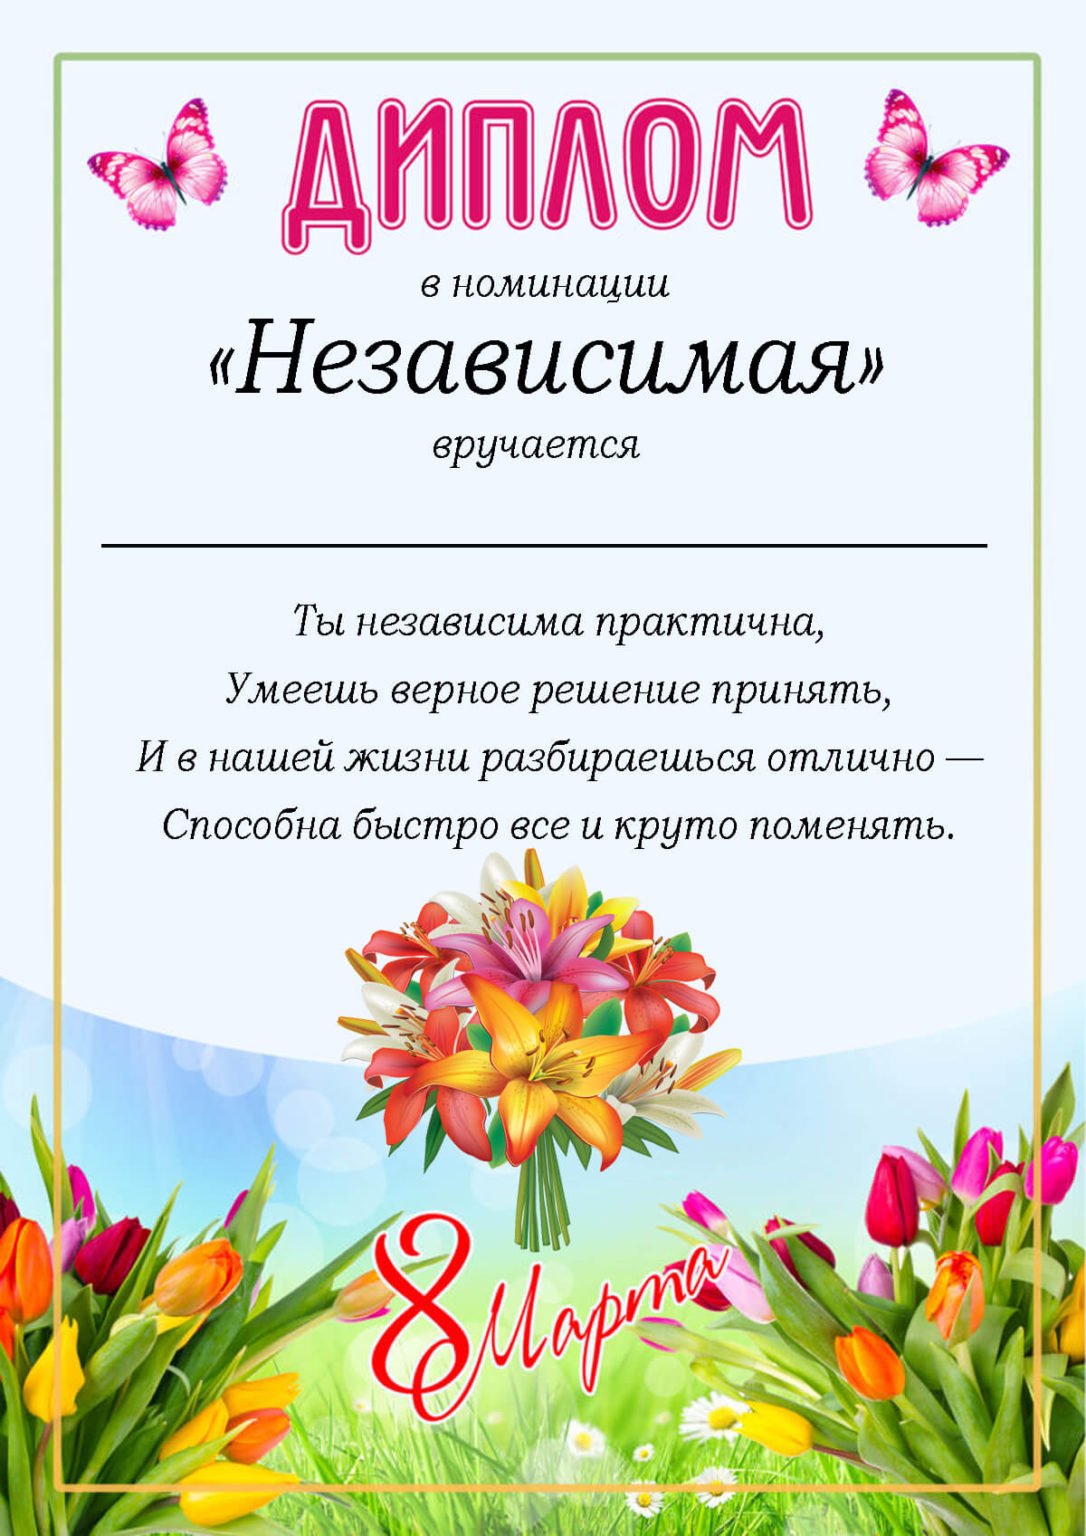 Букет проблем к 8 Марта: цветов будет меньше, а затрат больше | internat-mednogorsk.ru